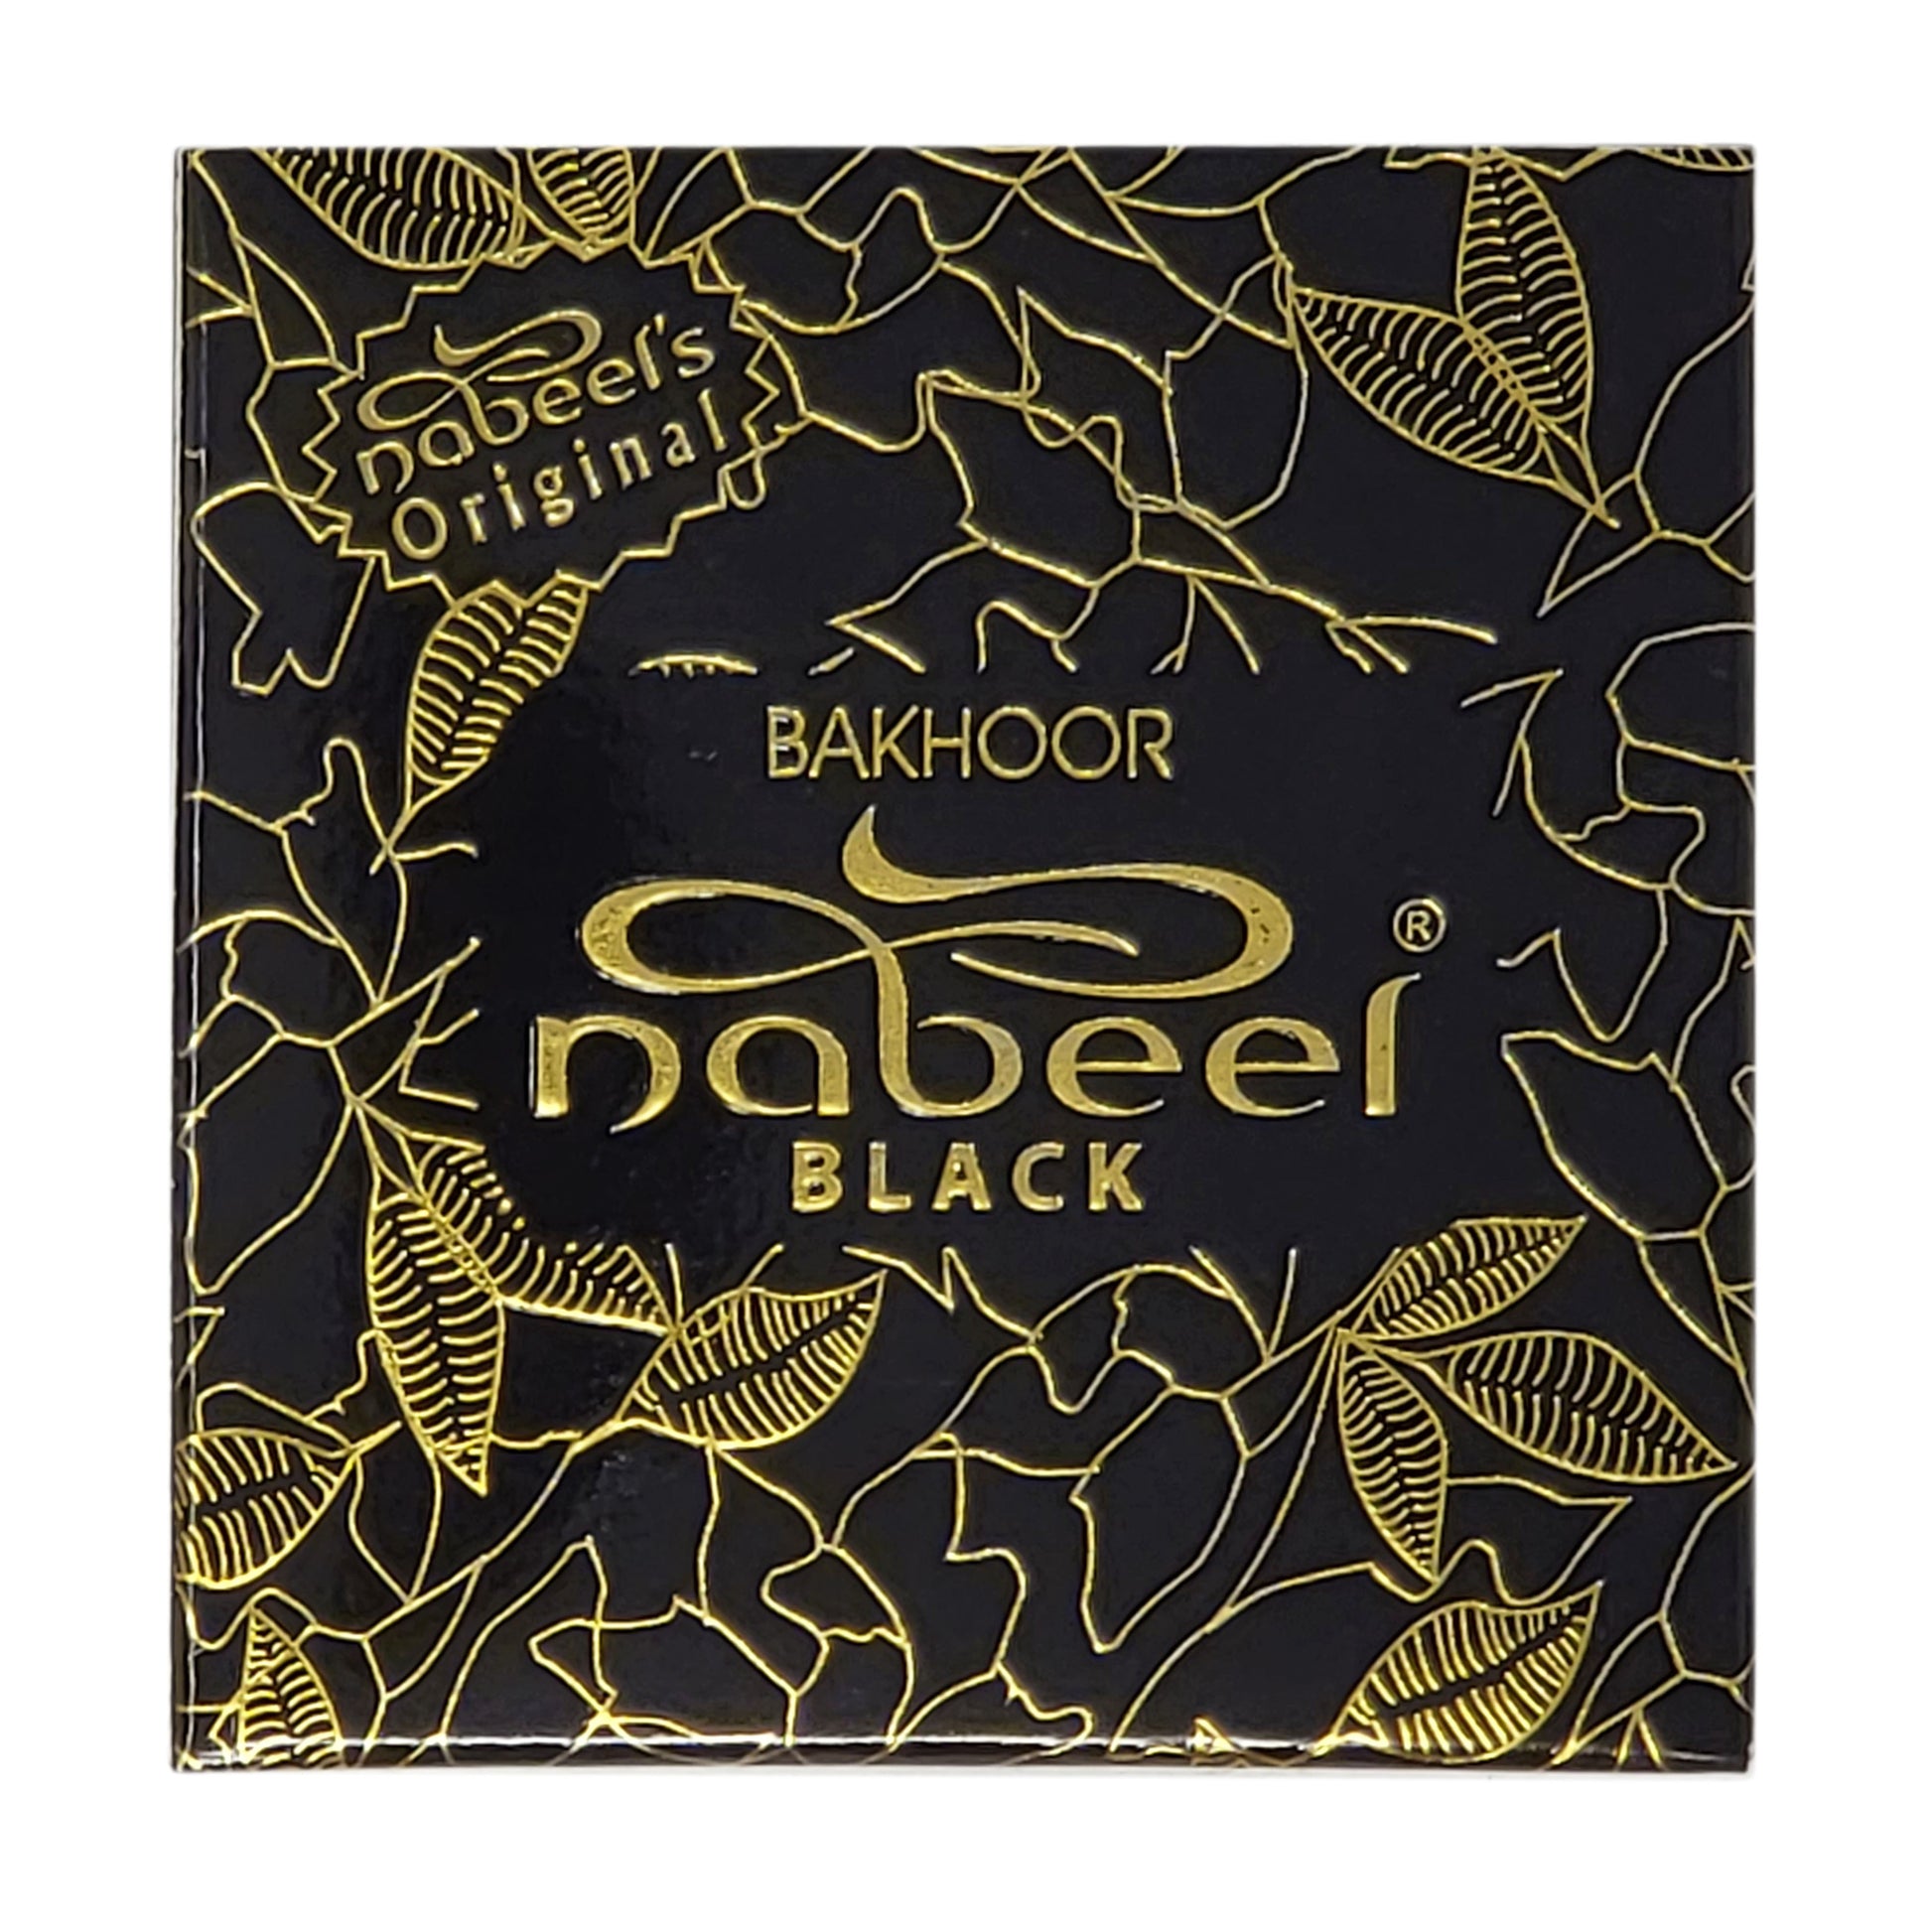 40g Bakhoor Nabeel incense arabian room fragrances